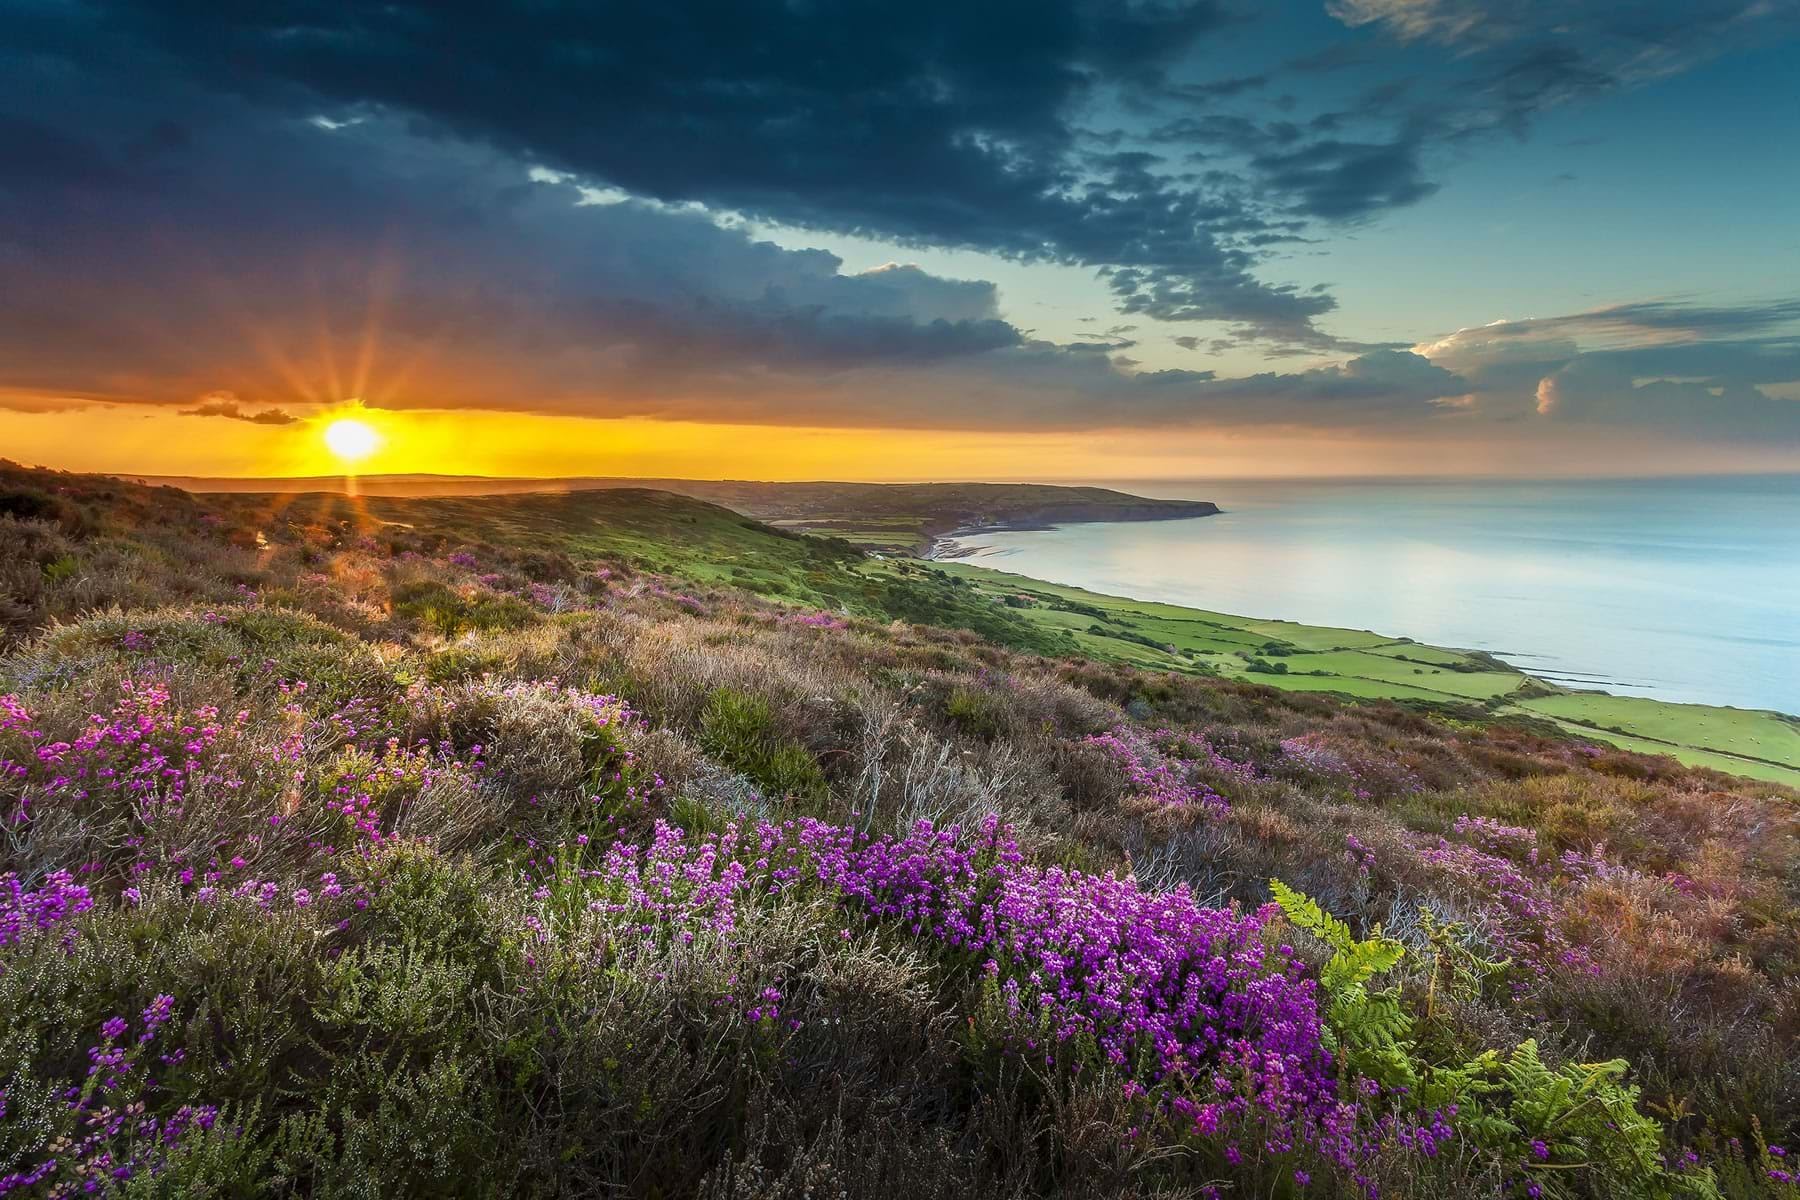 Sunrise on the Yorkshire Coast